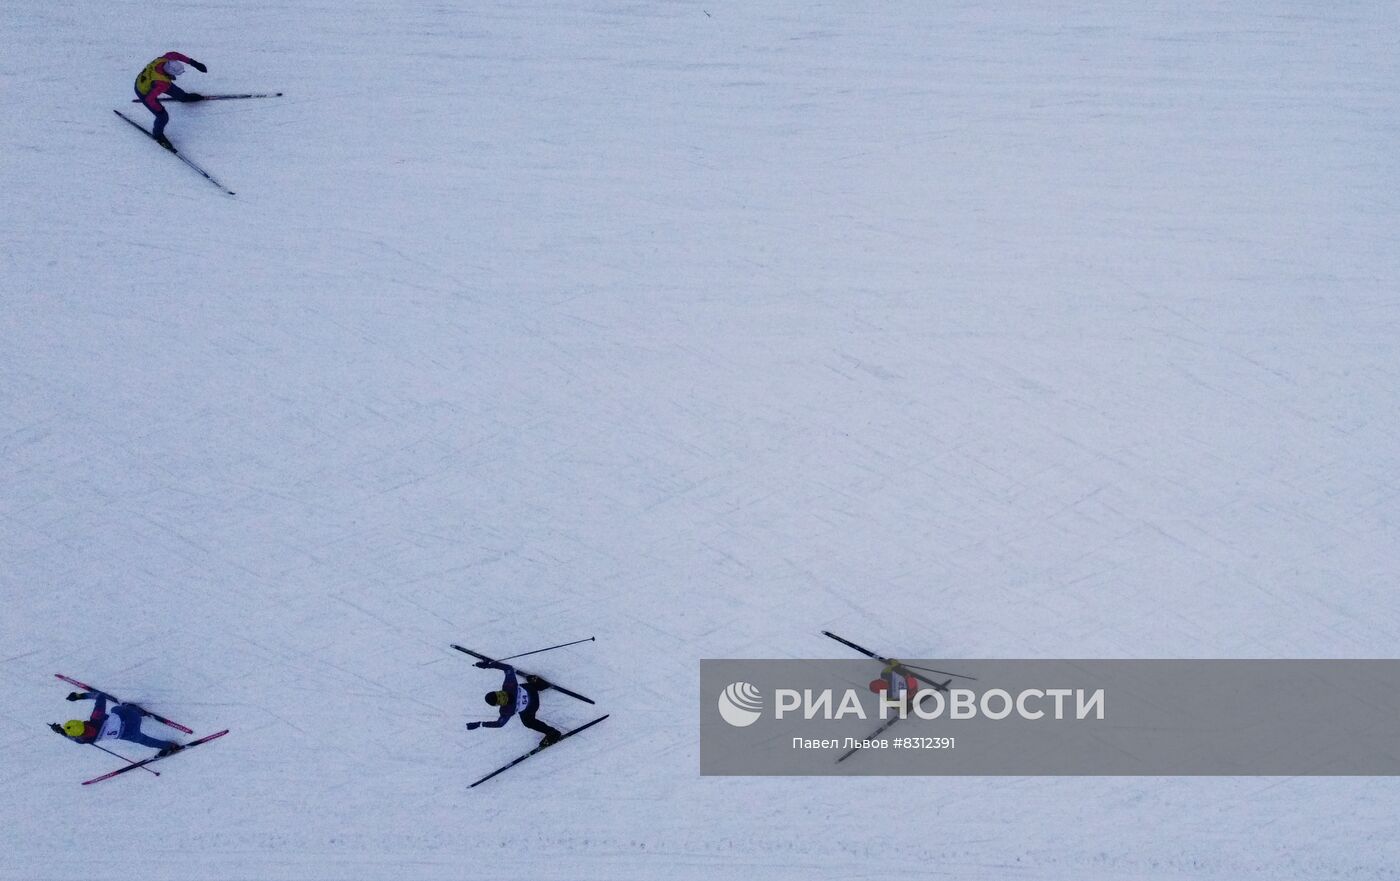 Открытие горнолыжного сезона в Хибинах